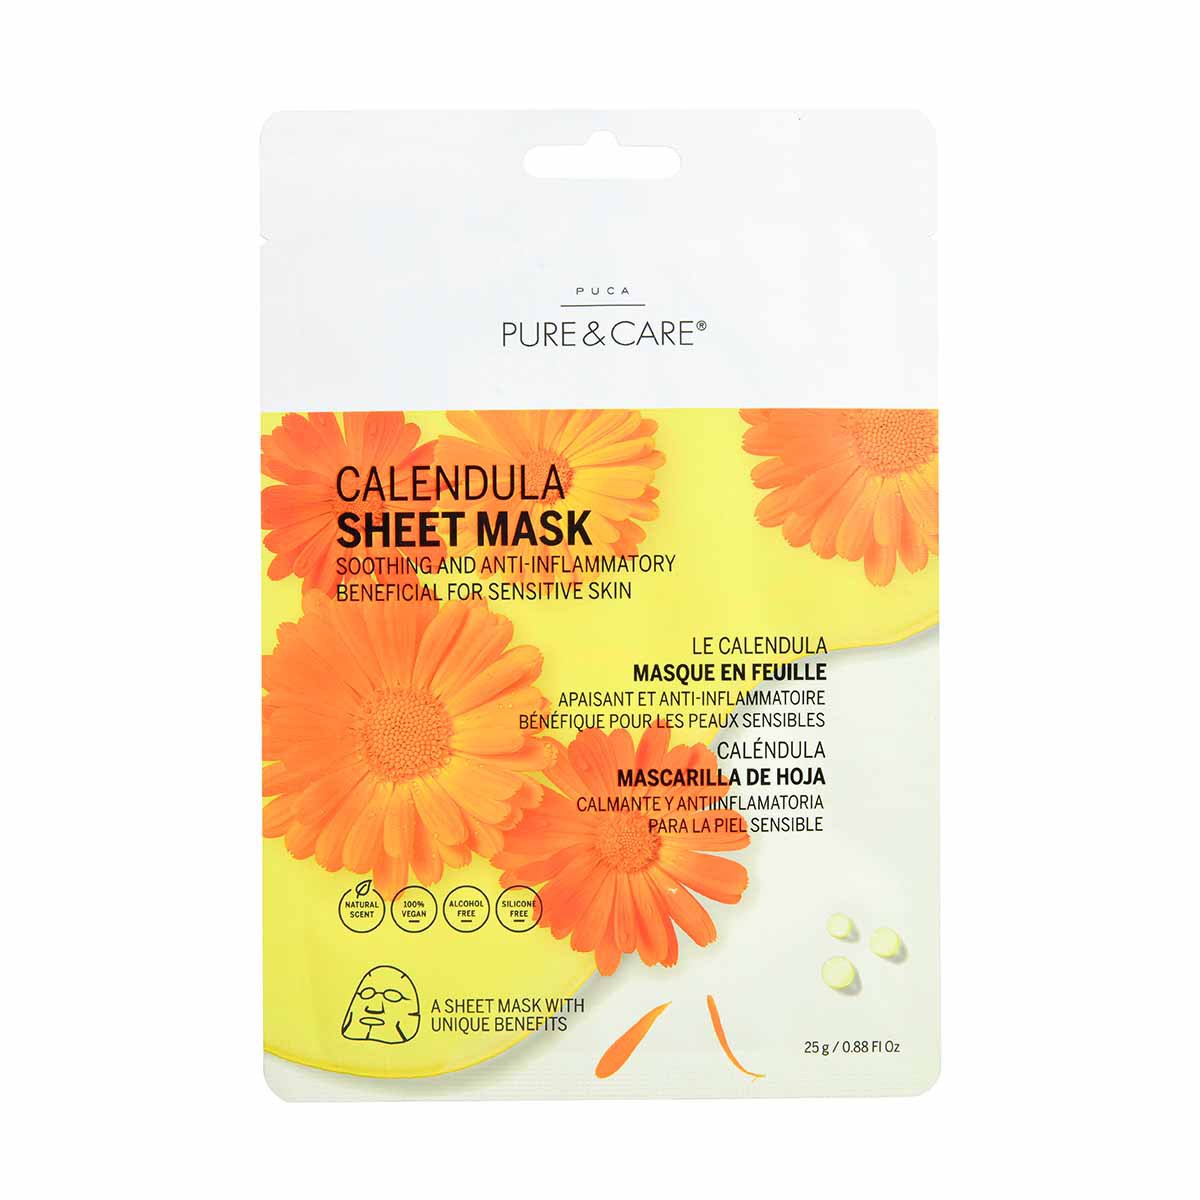 Calendula Sheet Mask for sensitive skin I PUCA - PURE & CARE